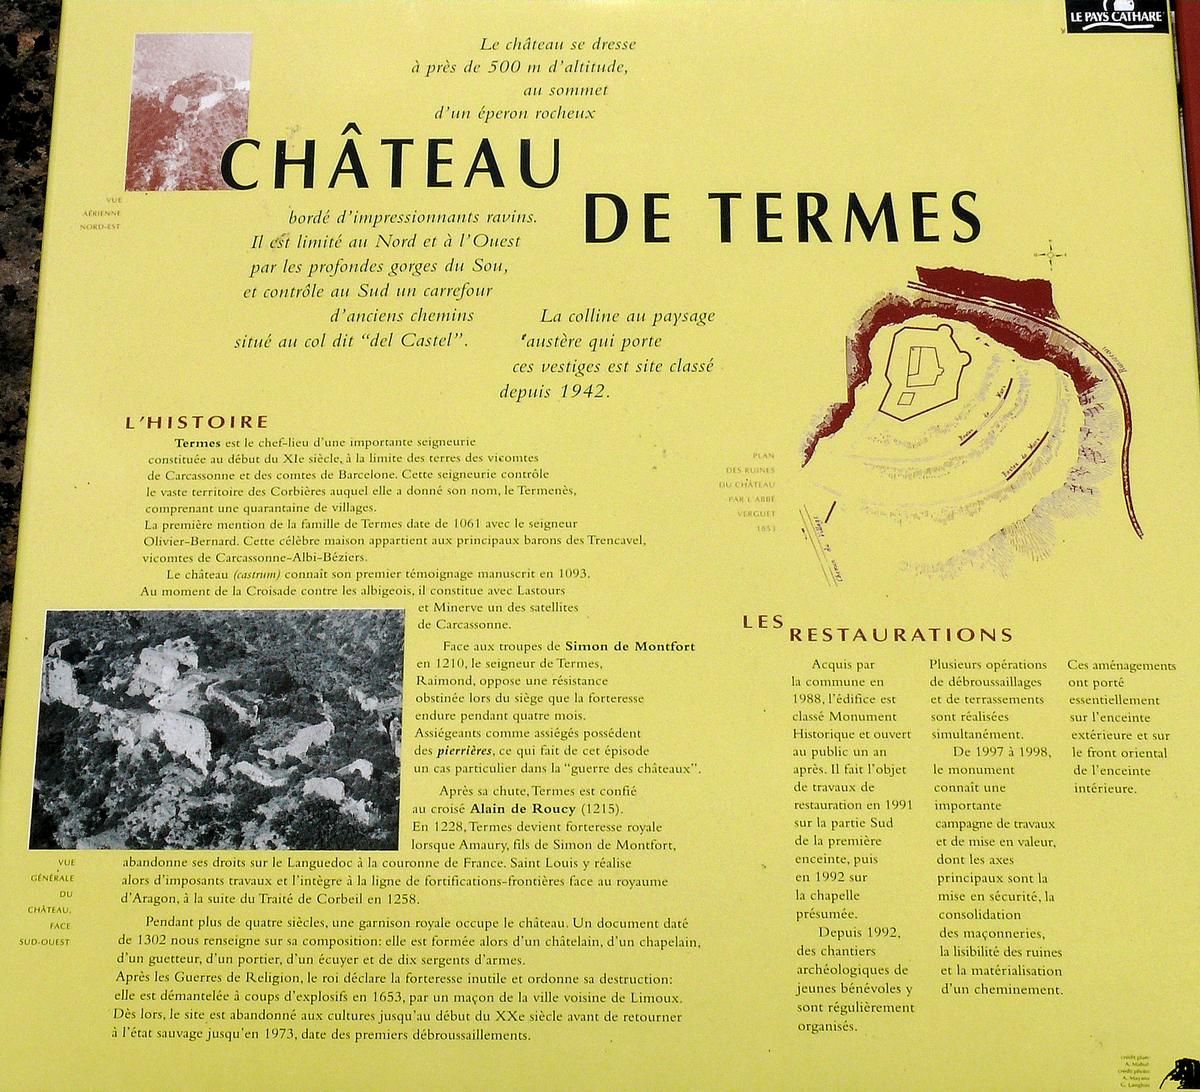 Termes - Château de Termes - Panneau d'information - Histoire 